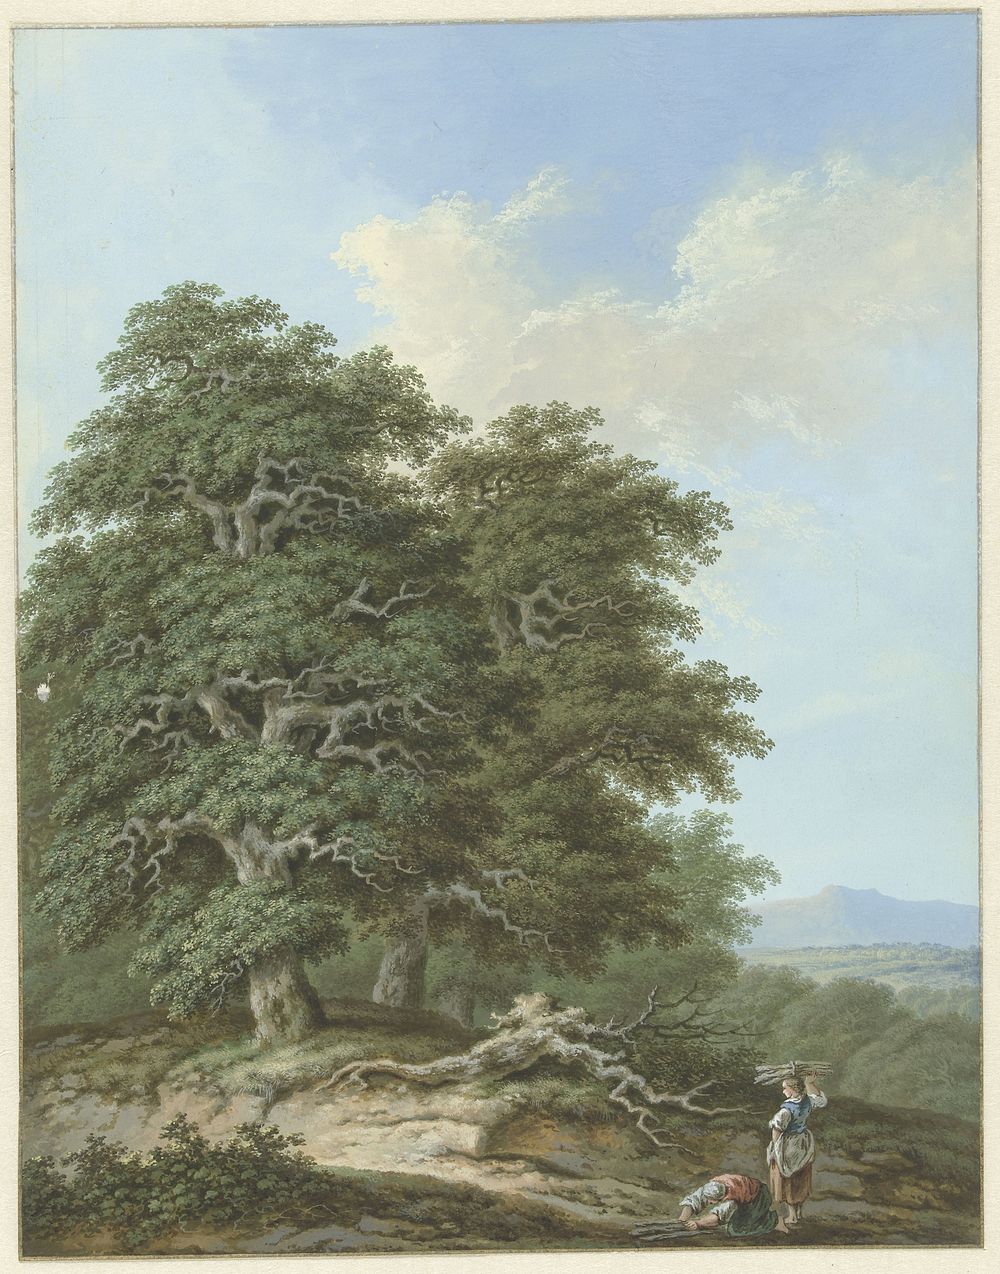 Landschap met twee vrouwen met takkenbossen (1793) by Monogrammist FWH and anonymous